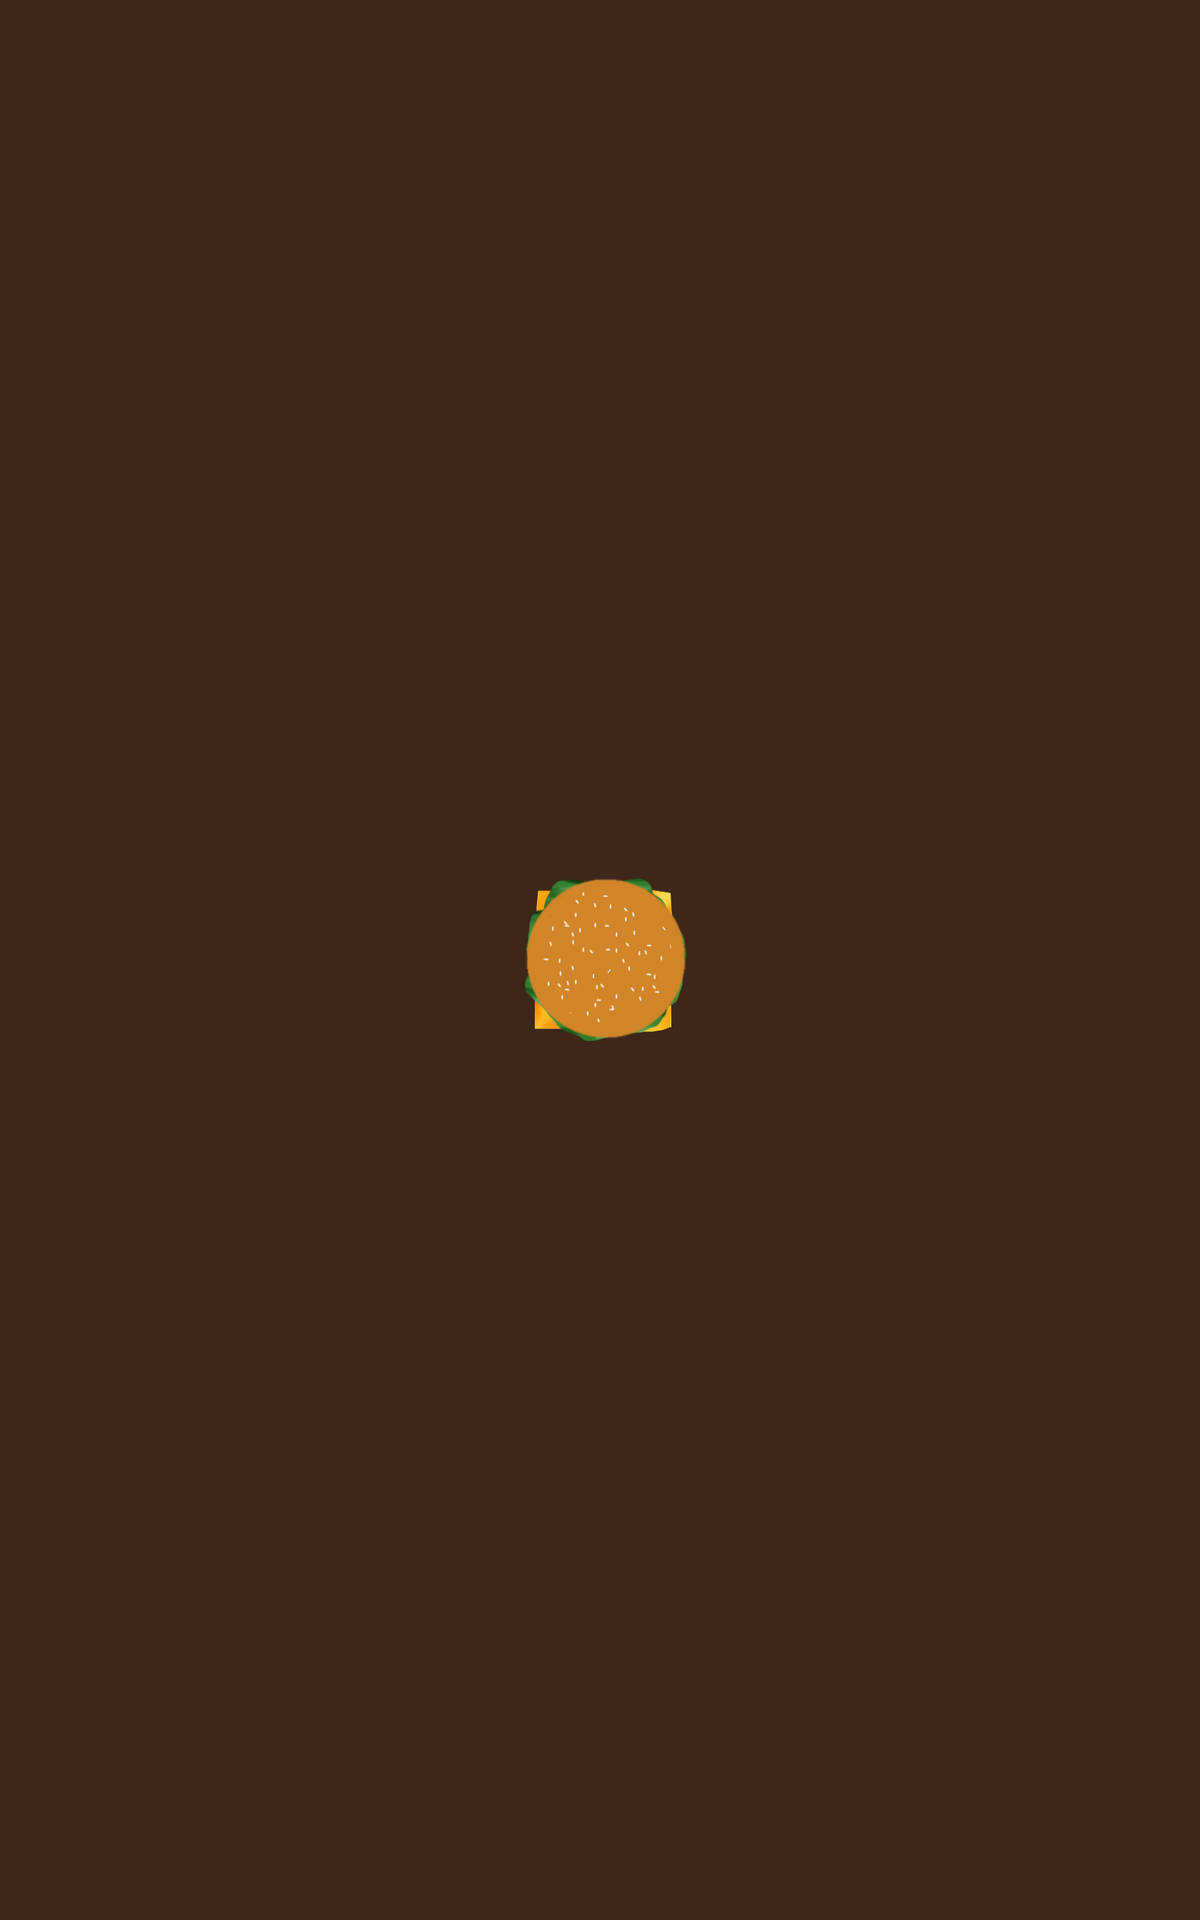 Burger Minimalist Ipad Wallpaper